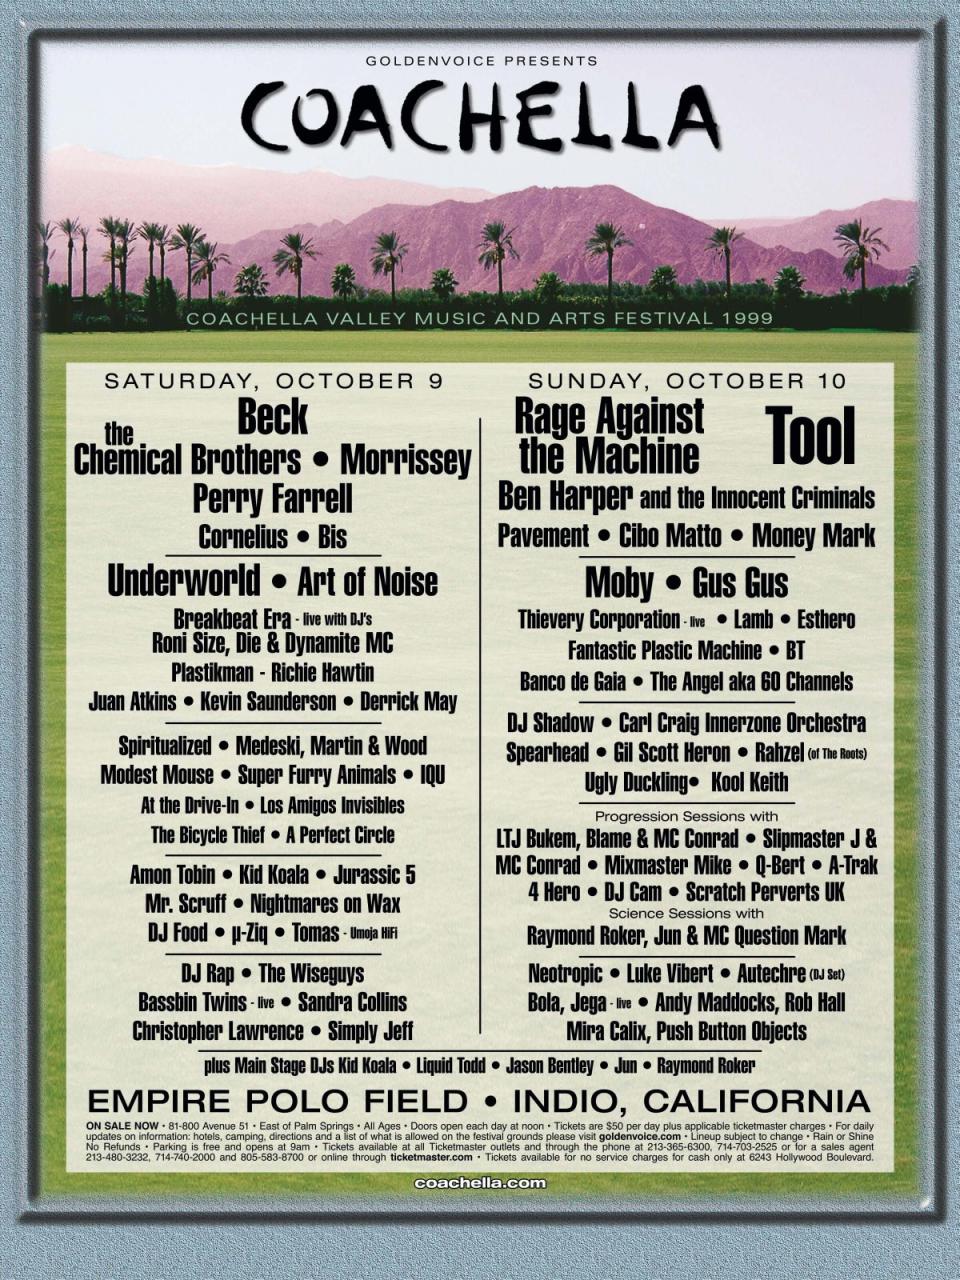 Coachella 1999 poster (Coachella.com)